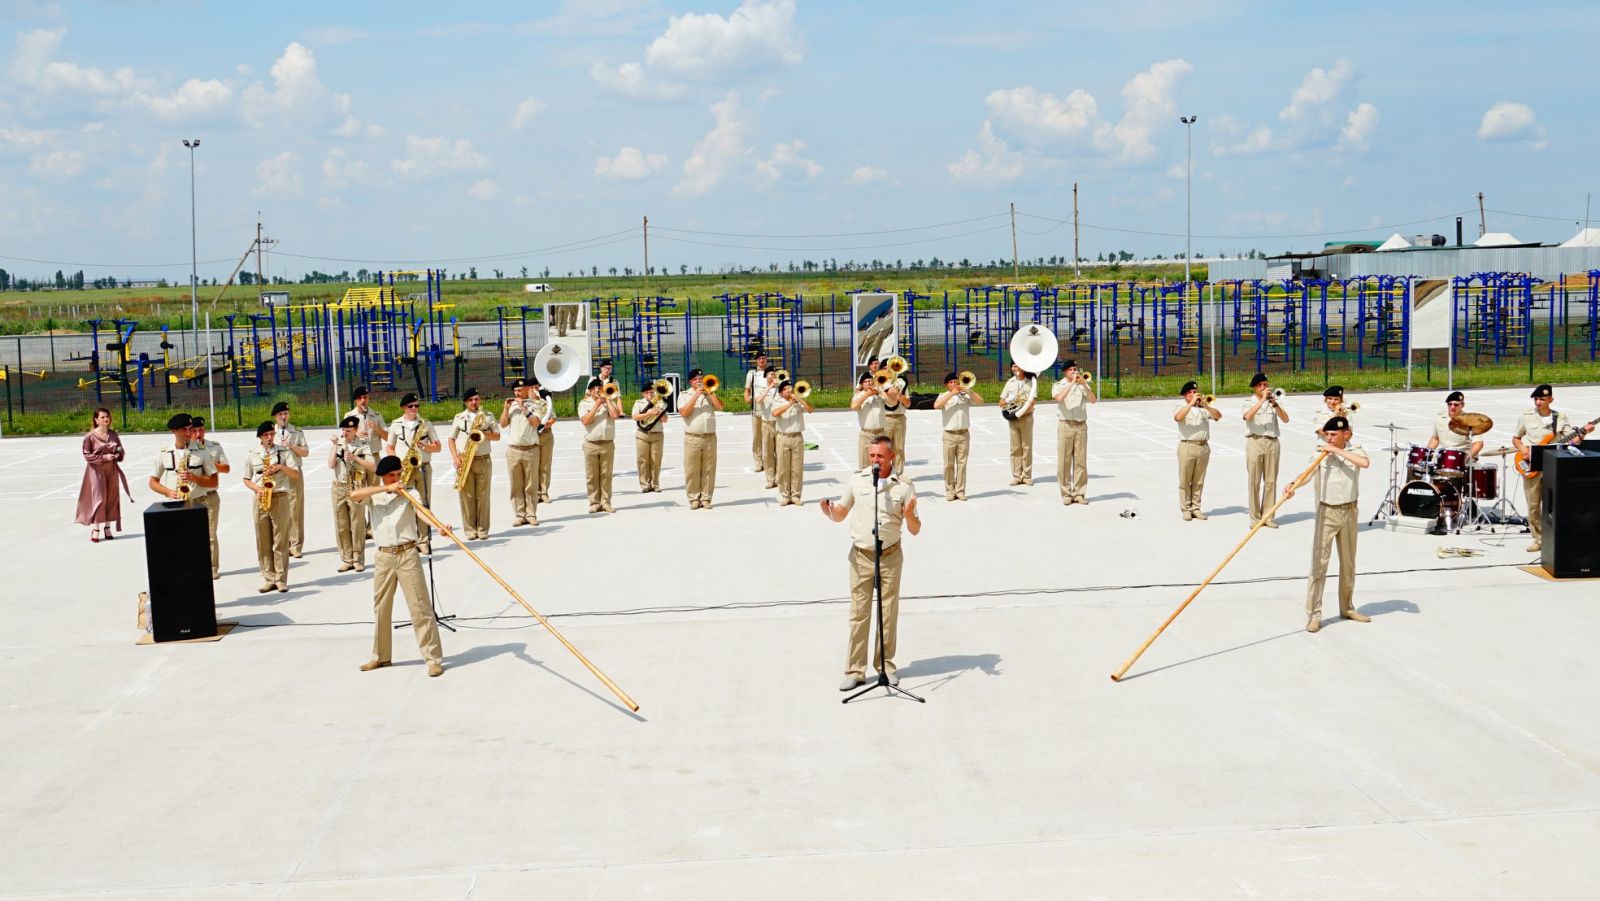 Фото з будівництва «Широкого лану» показали в Міноборони — військових надихає оркестр, фото — Міноборони